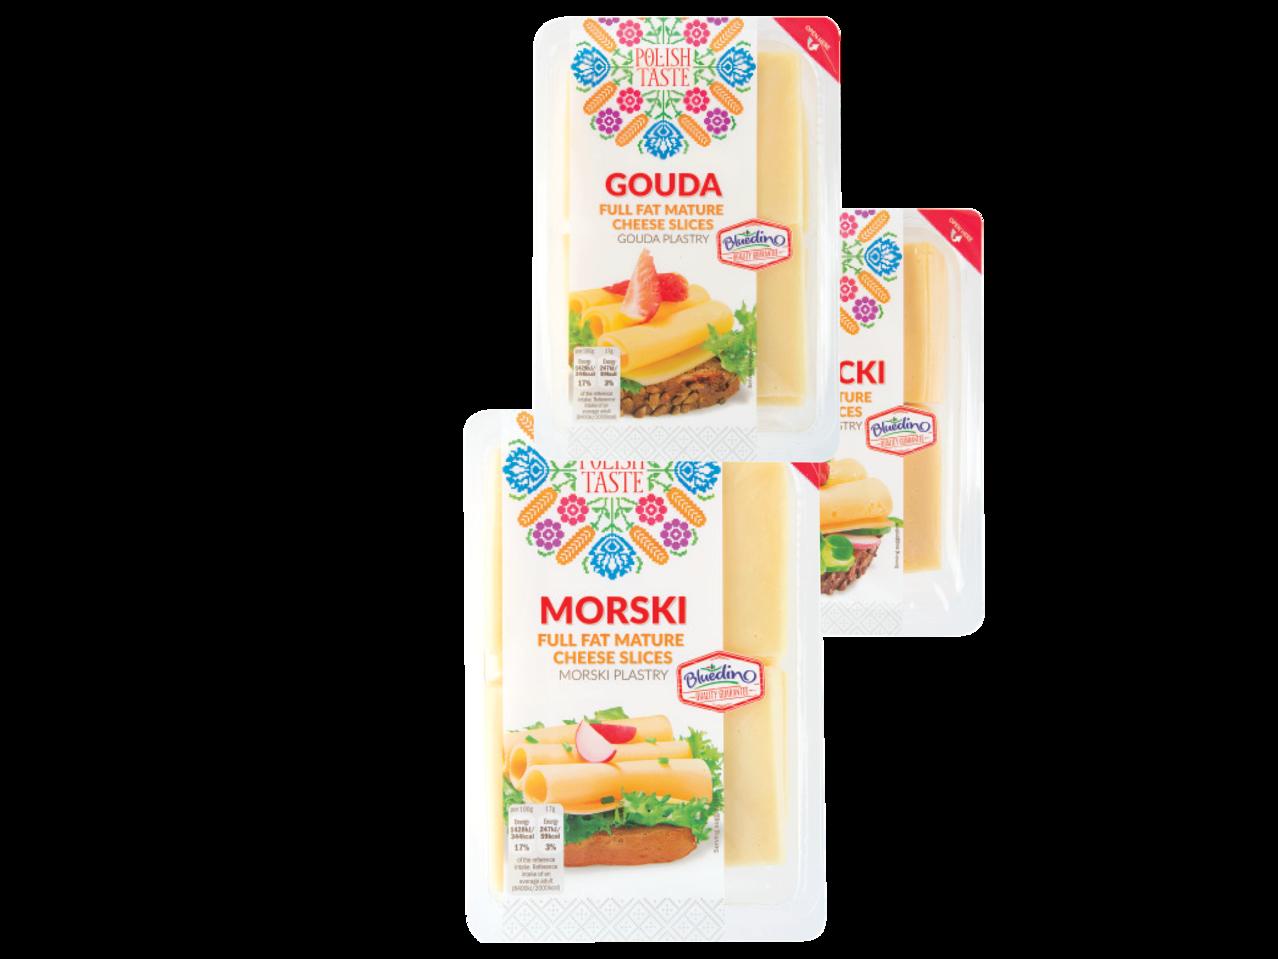 POLISH TASTE(R) Mature Cheese Slices